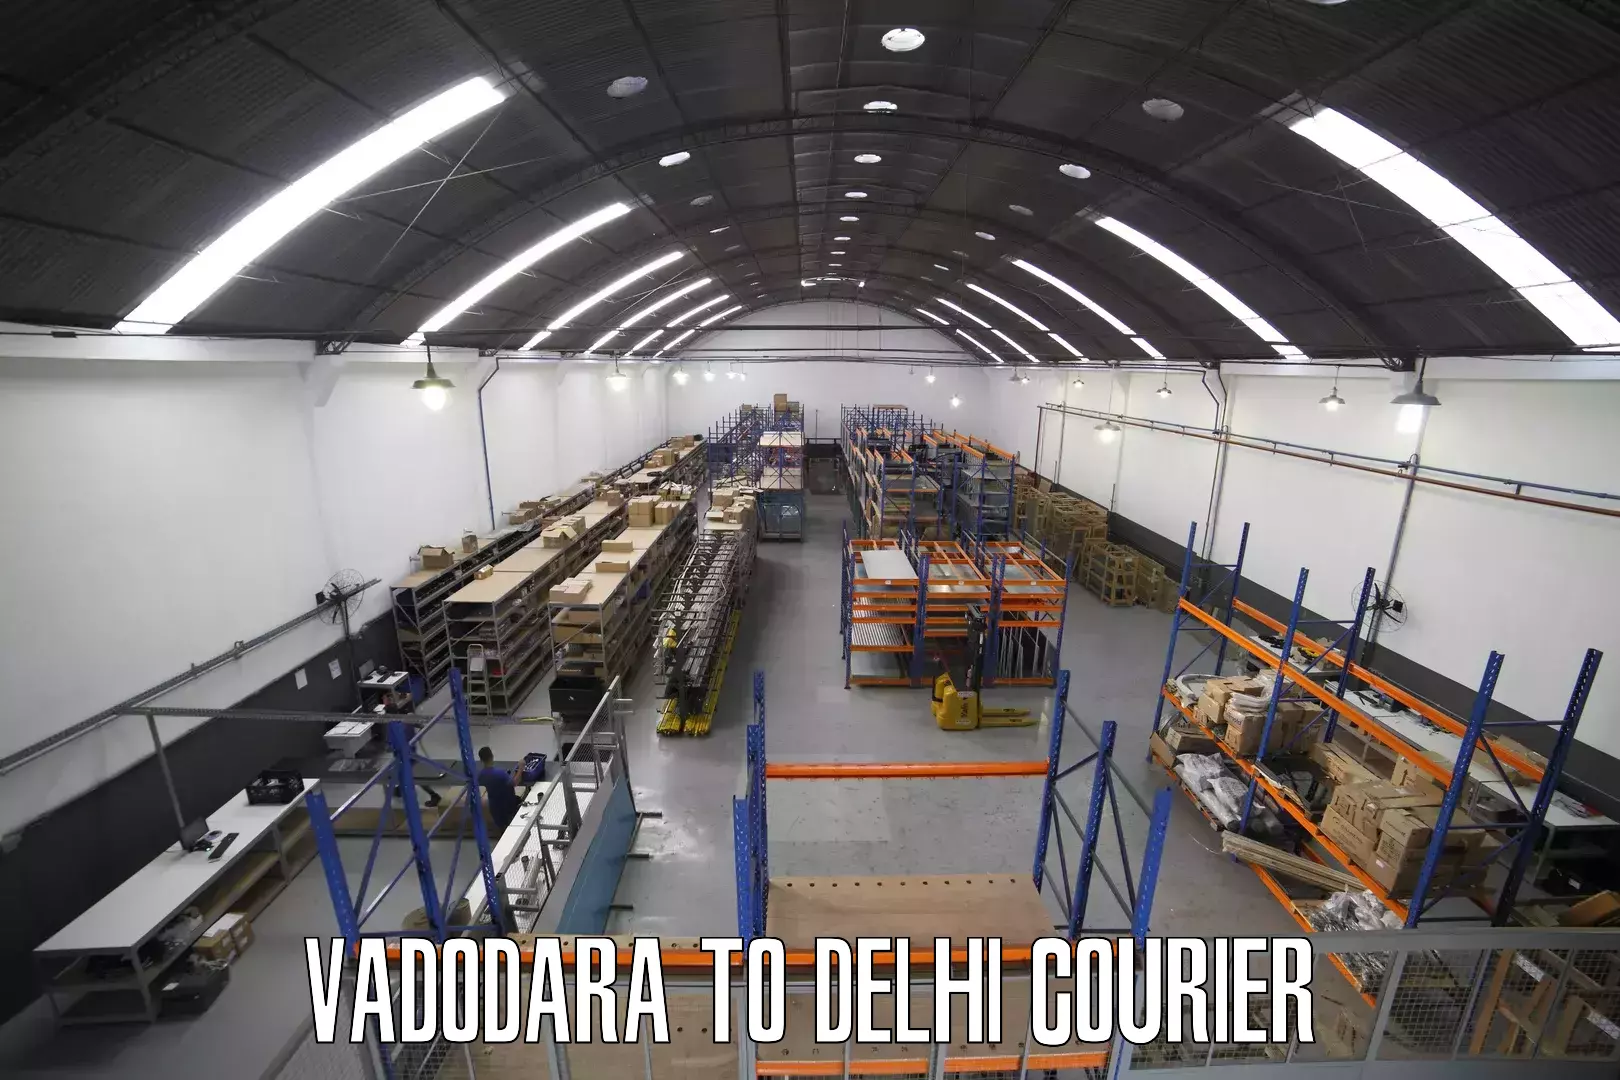 Cost-effective courier options in Vadodara to Jamia Hamdard New Delhi